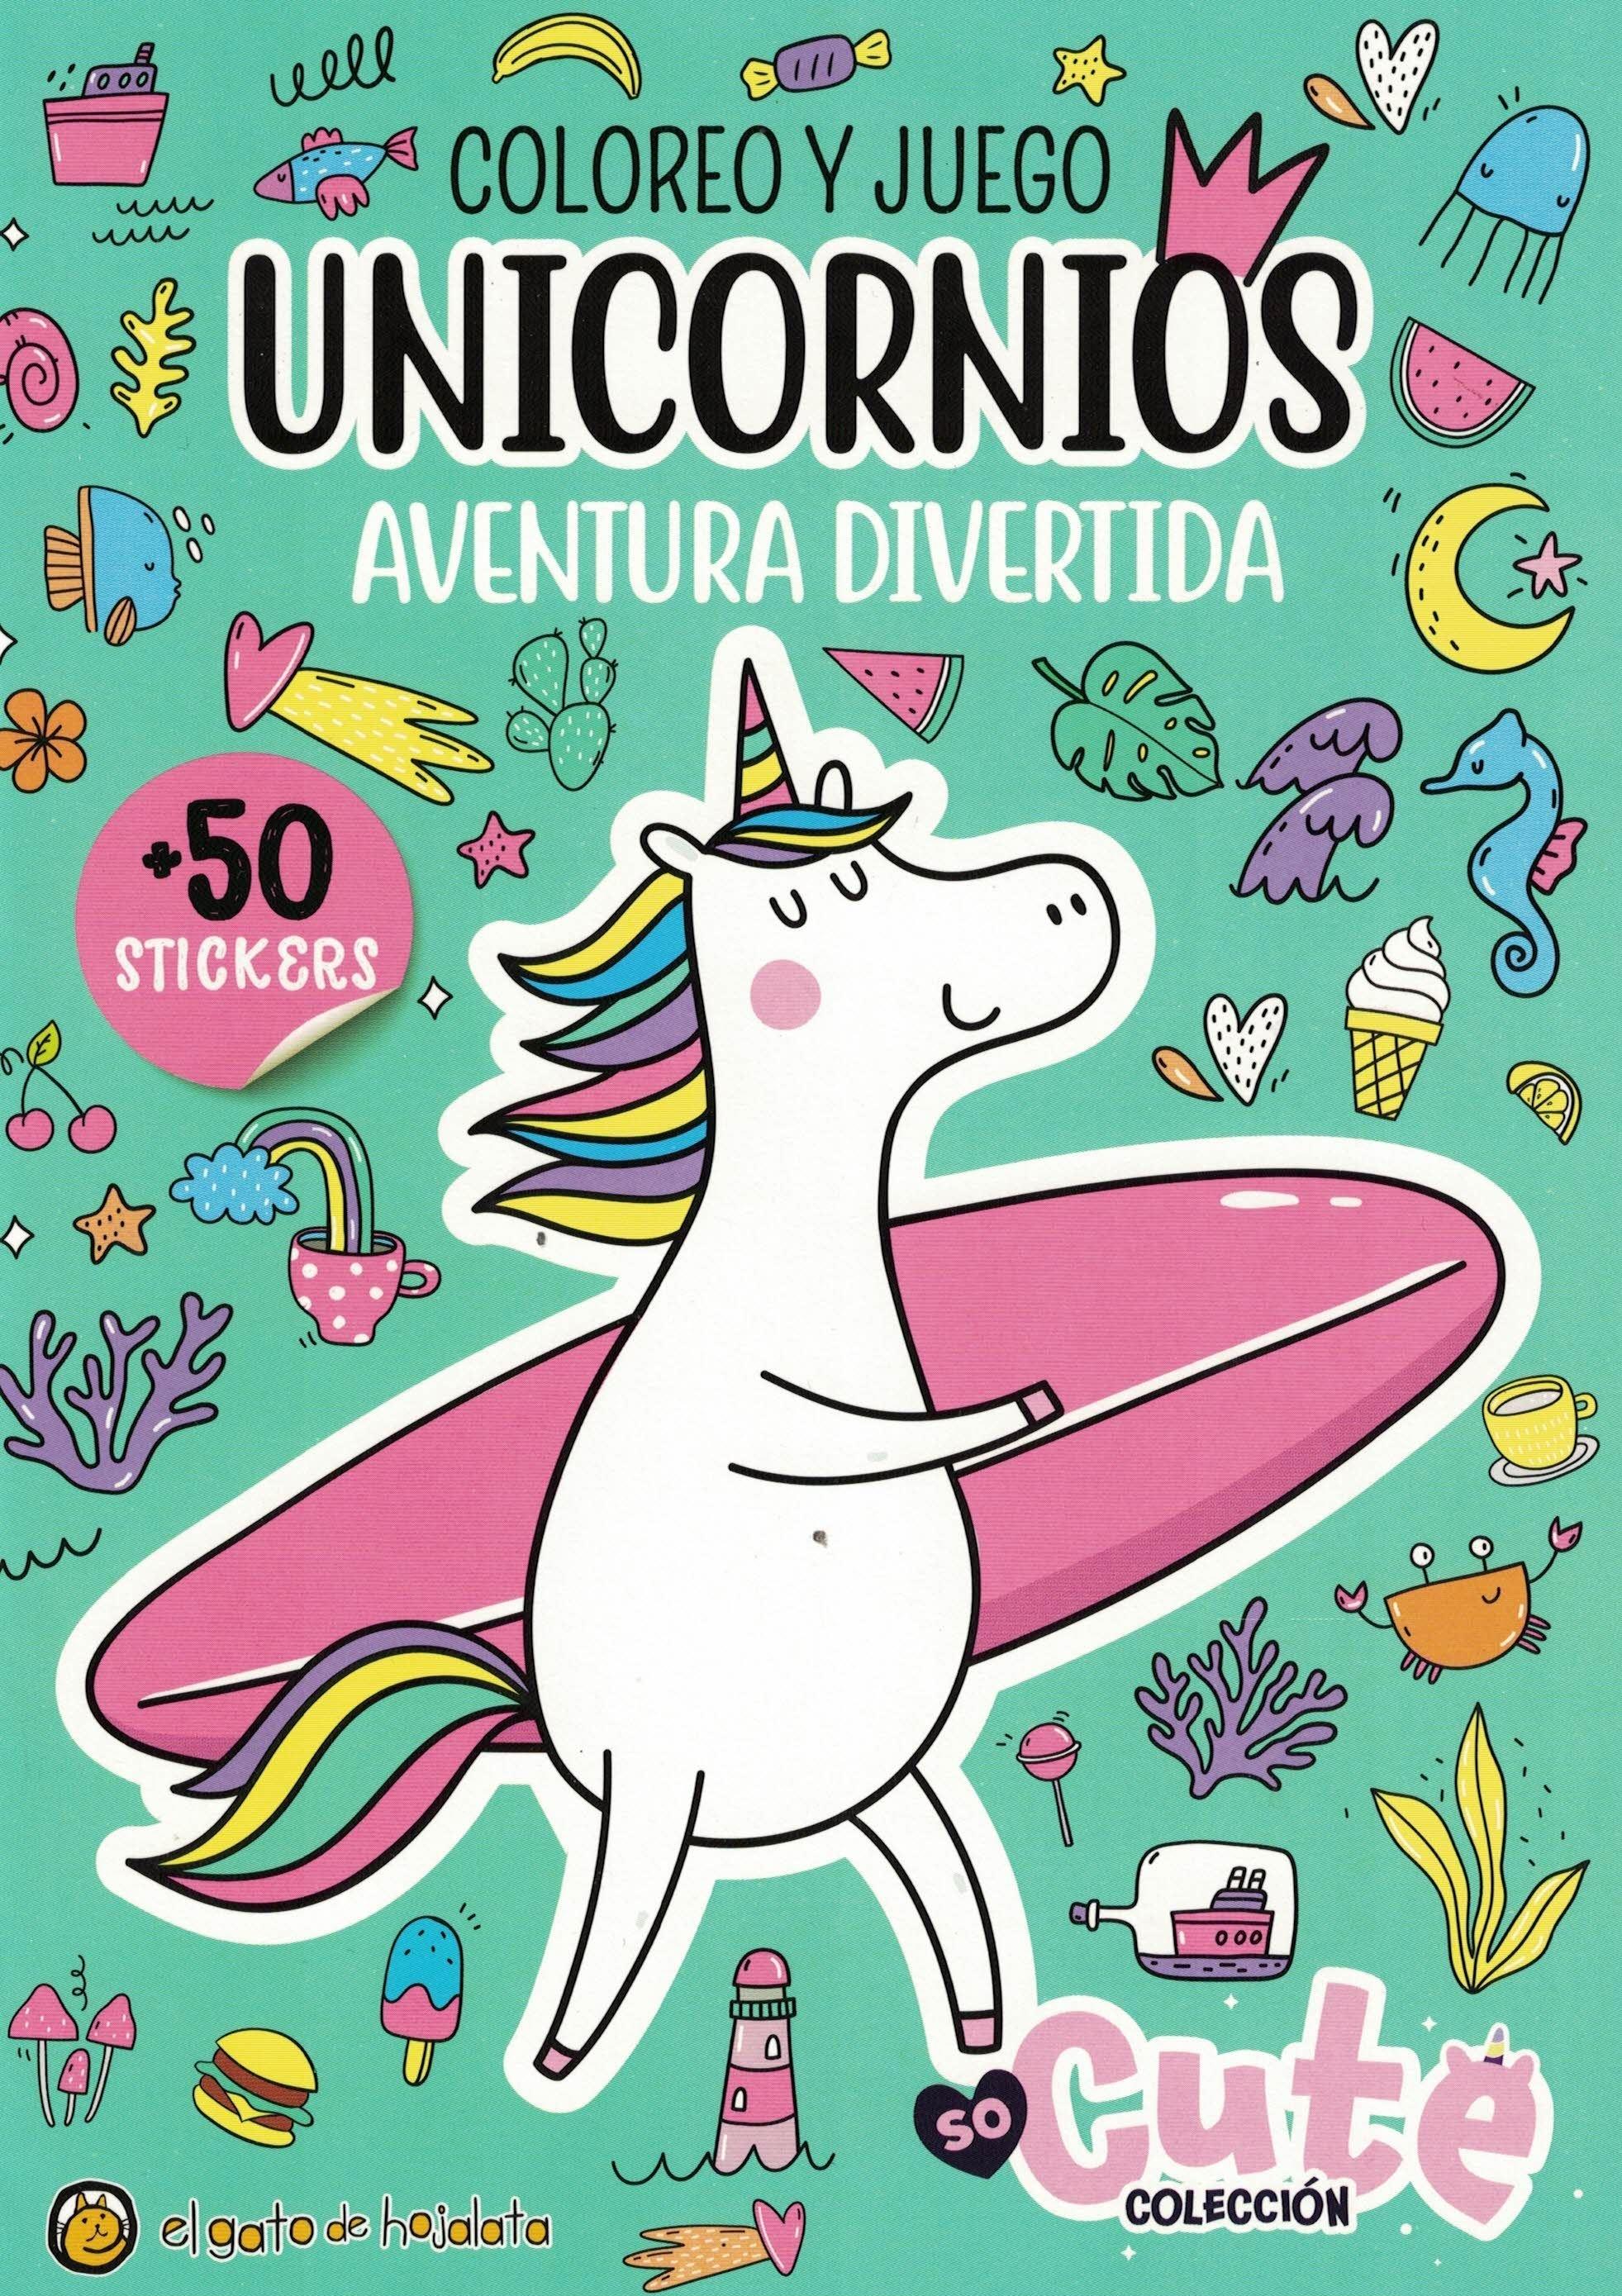 Coloreo y juego unicornios aventura divertida